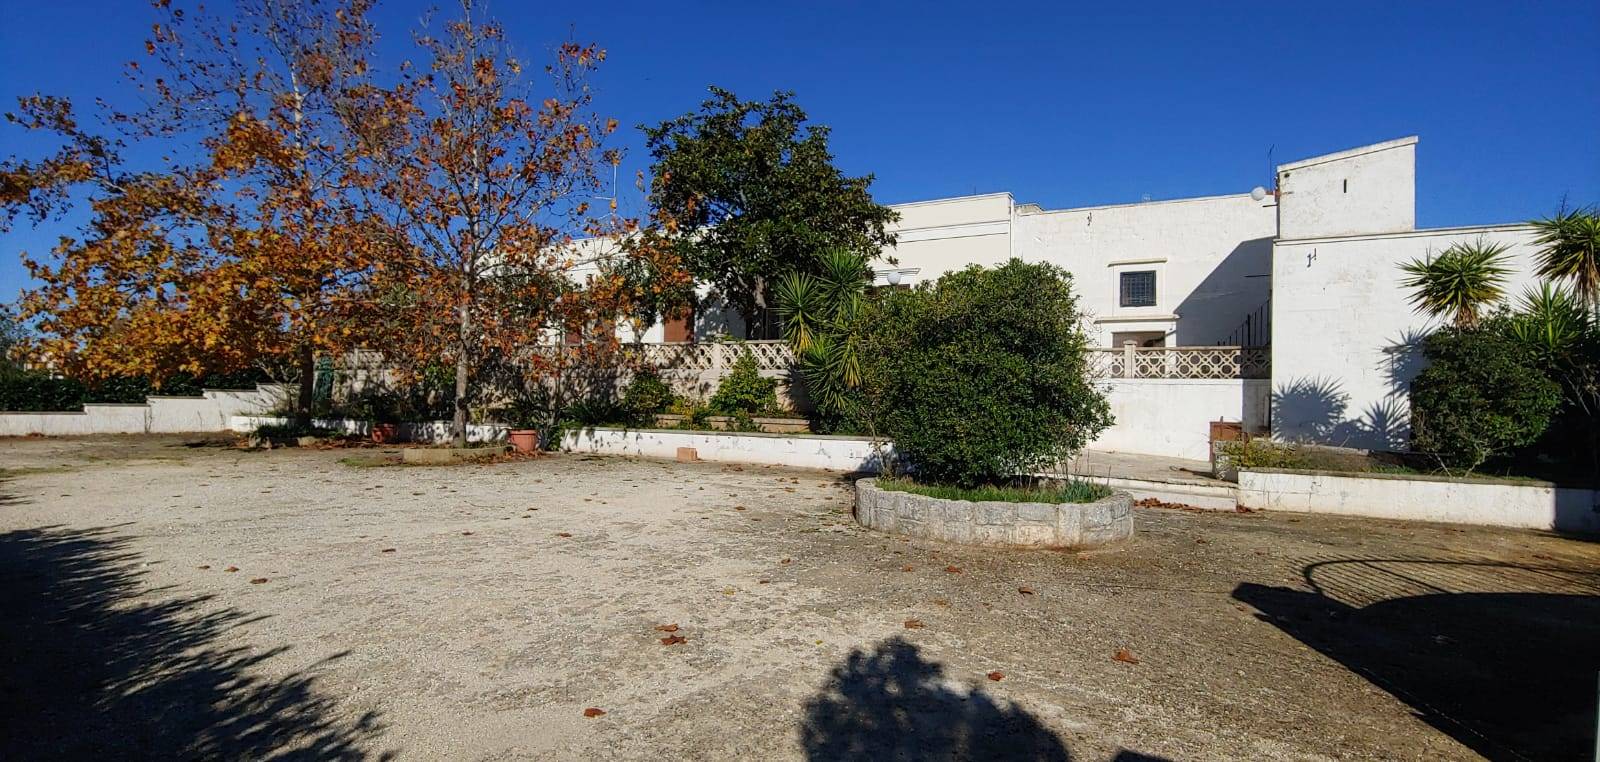 Villa in vendita a Martina Franca, 9 locali, prezzo € 375.000 | PortaleAgenzieImmobiliari.it